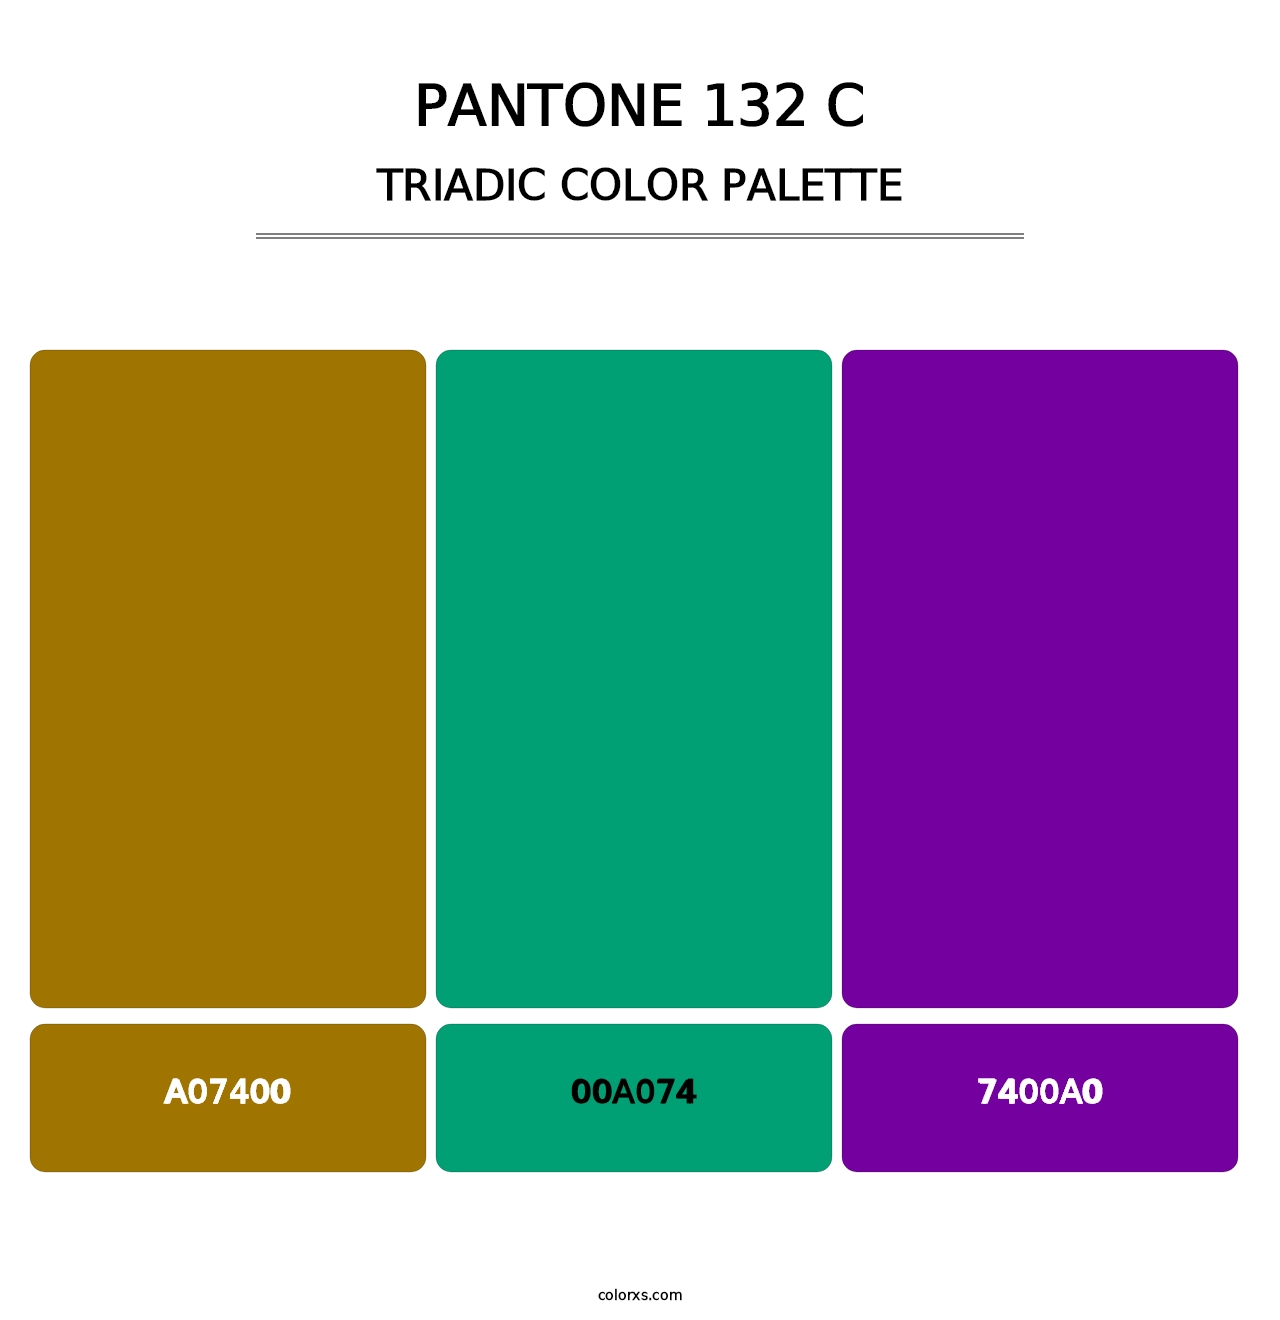 PANTONE 132 C - Triadic Color Palette